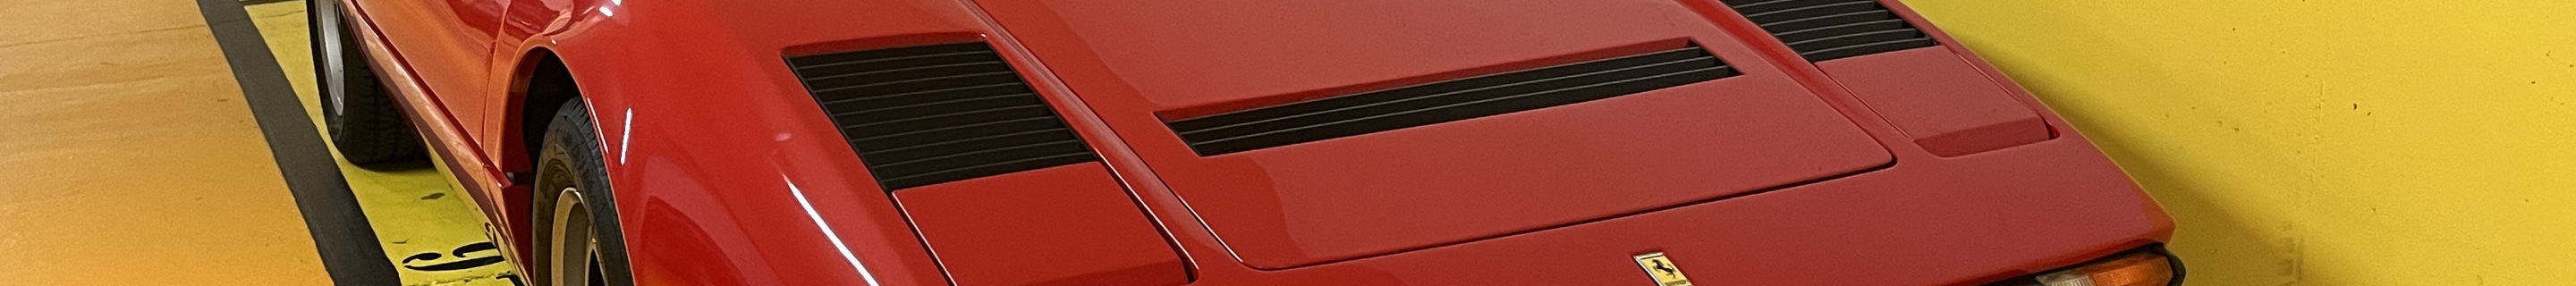 Ferrari 208 GTS Turbo